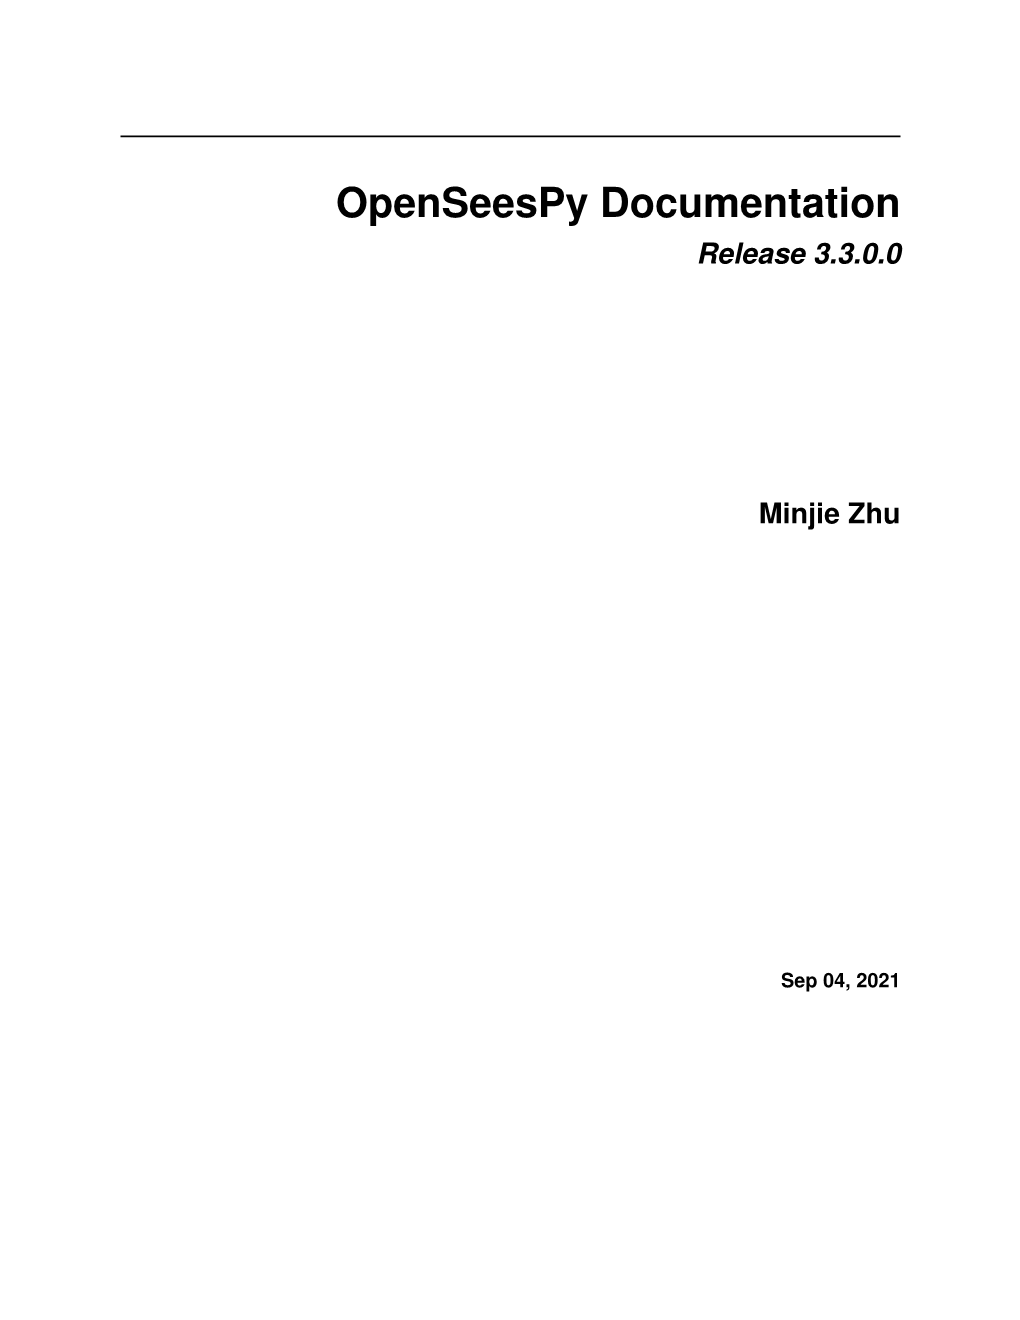 Openseespy Documentation Release 3.3.0.0